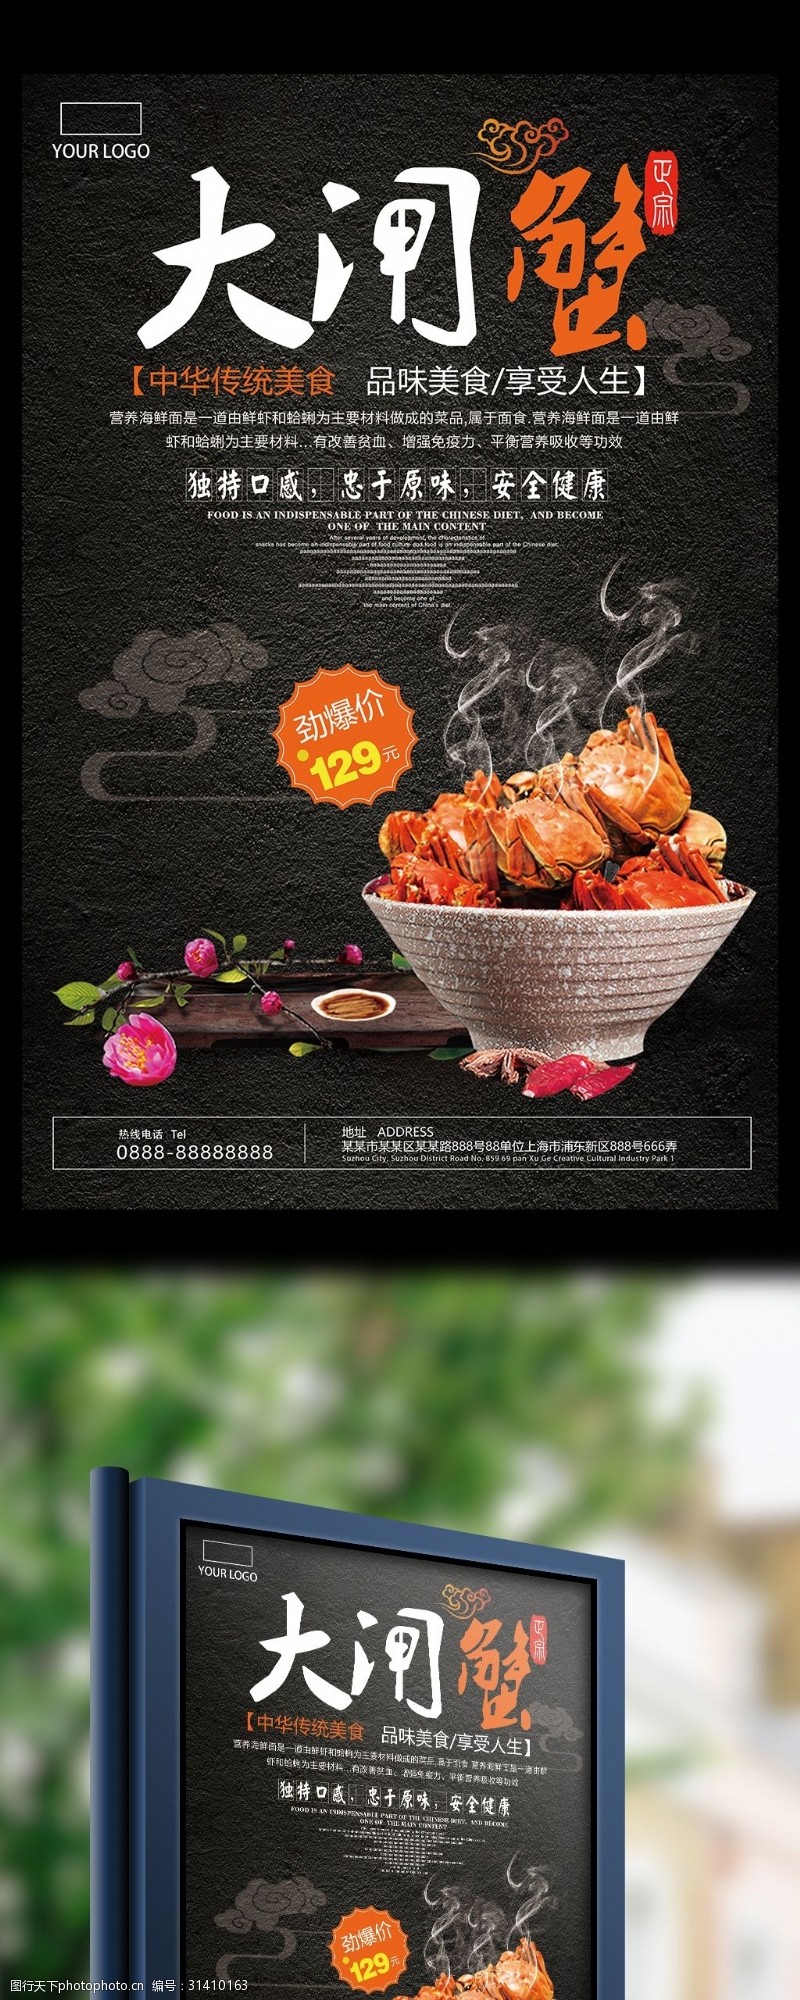 新品上市宣传创意中国风唯美大气大闸蟹促销海报